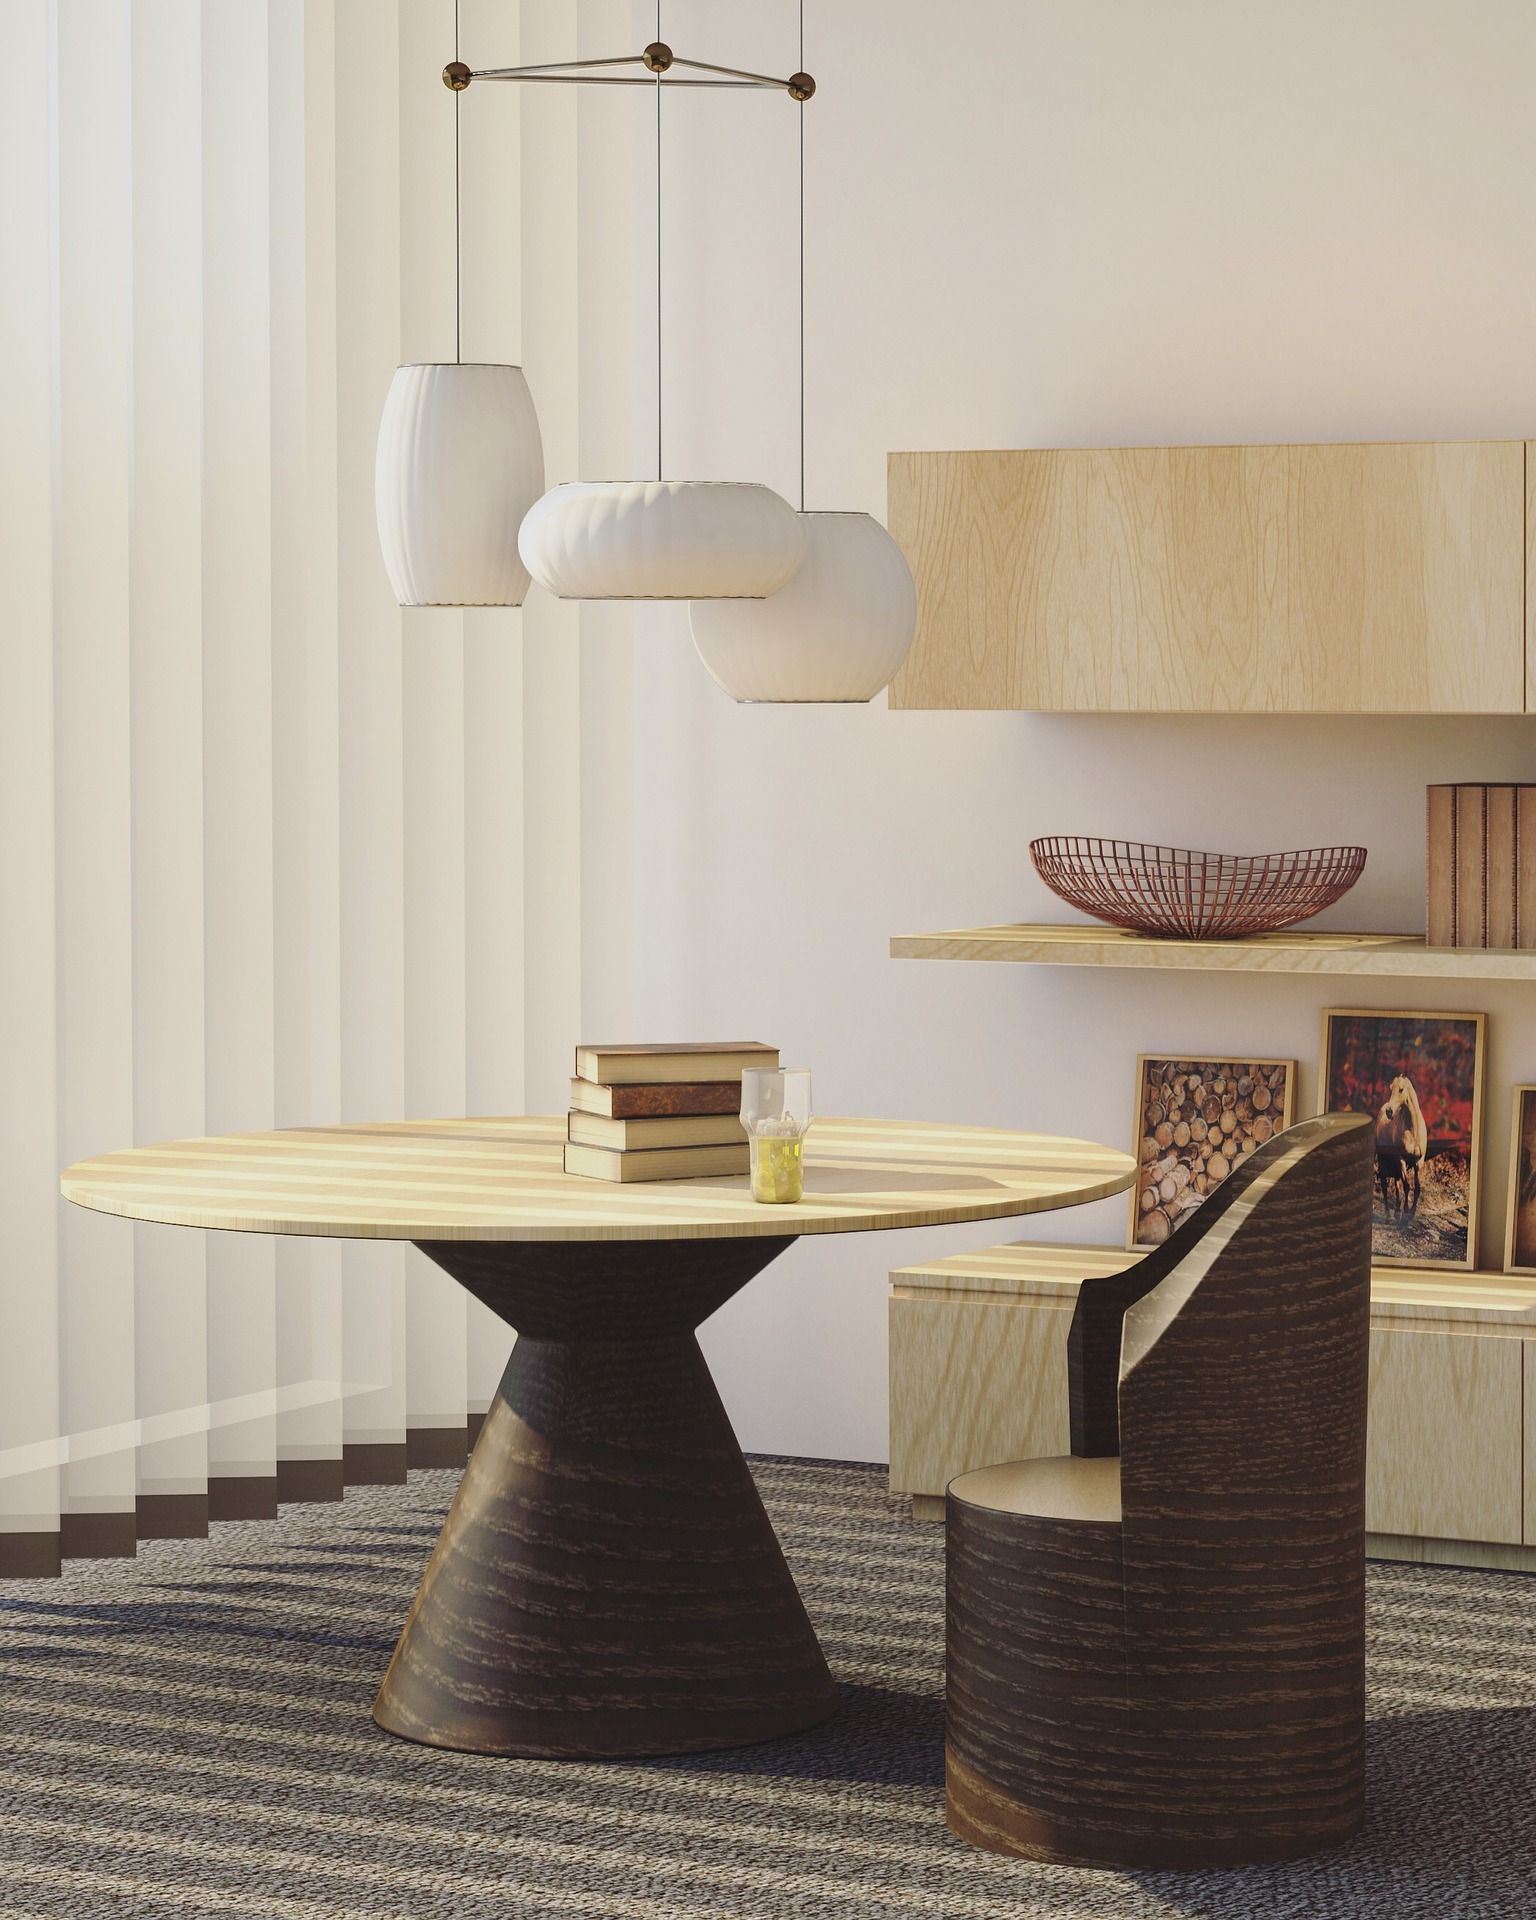 Styl skandynawski meble krzeslo lampy dekoracje wyposazenie jak urzadzic aranzacje inspiracje dekoportal